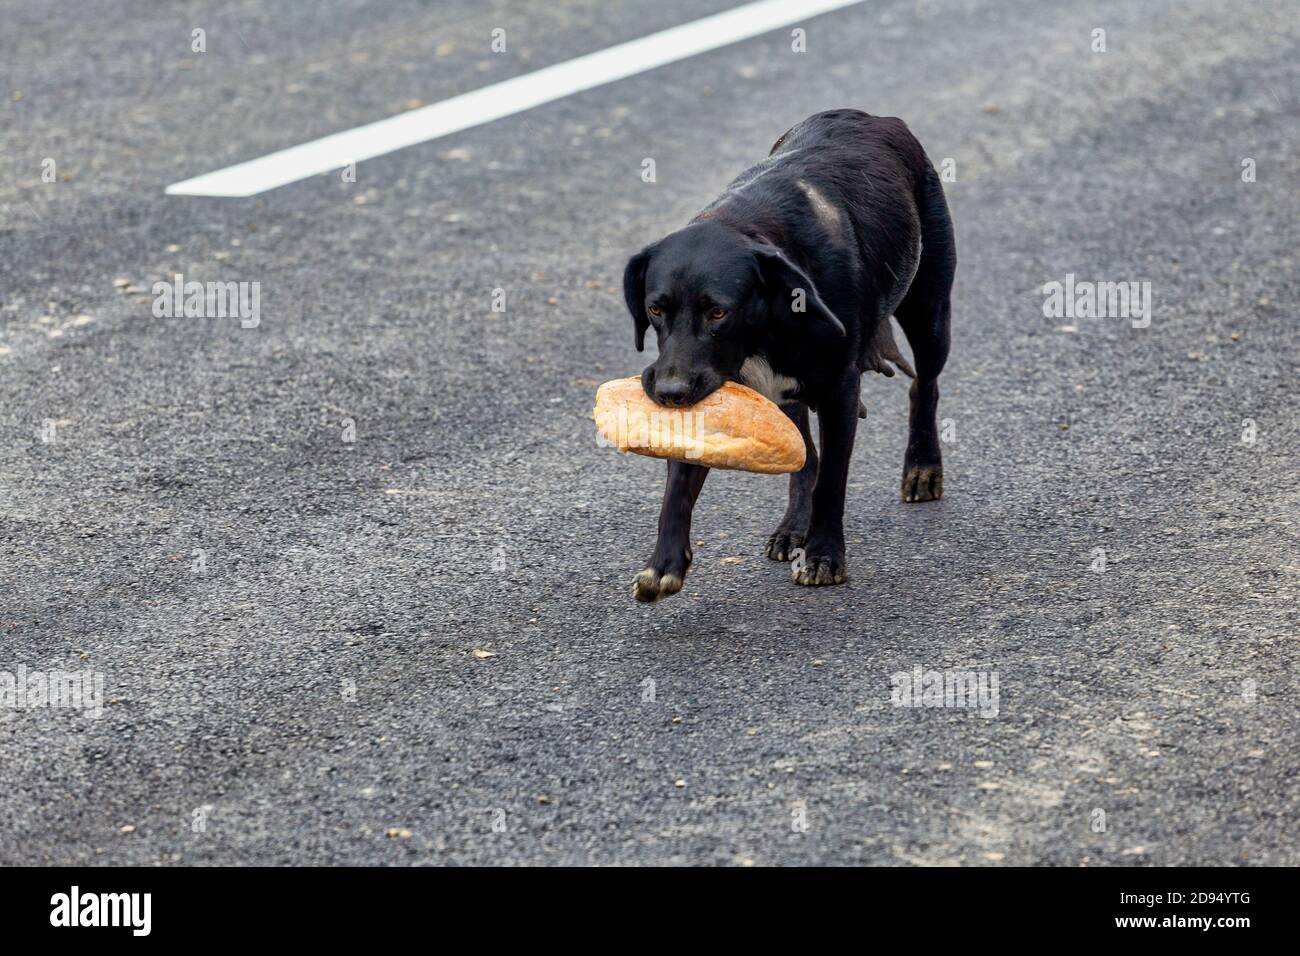 Obdachlose Mutter Hund kehrt mit Nahrung für die Welpen. Brot im Mund. Stockfoto